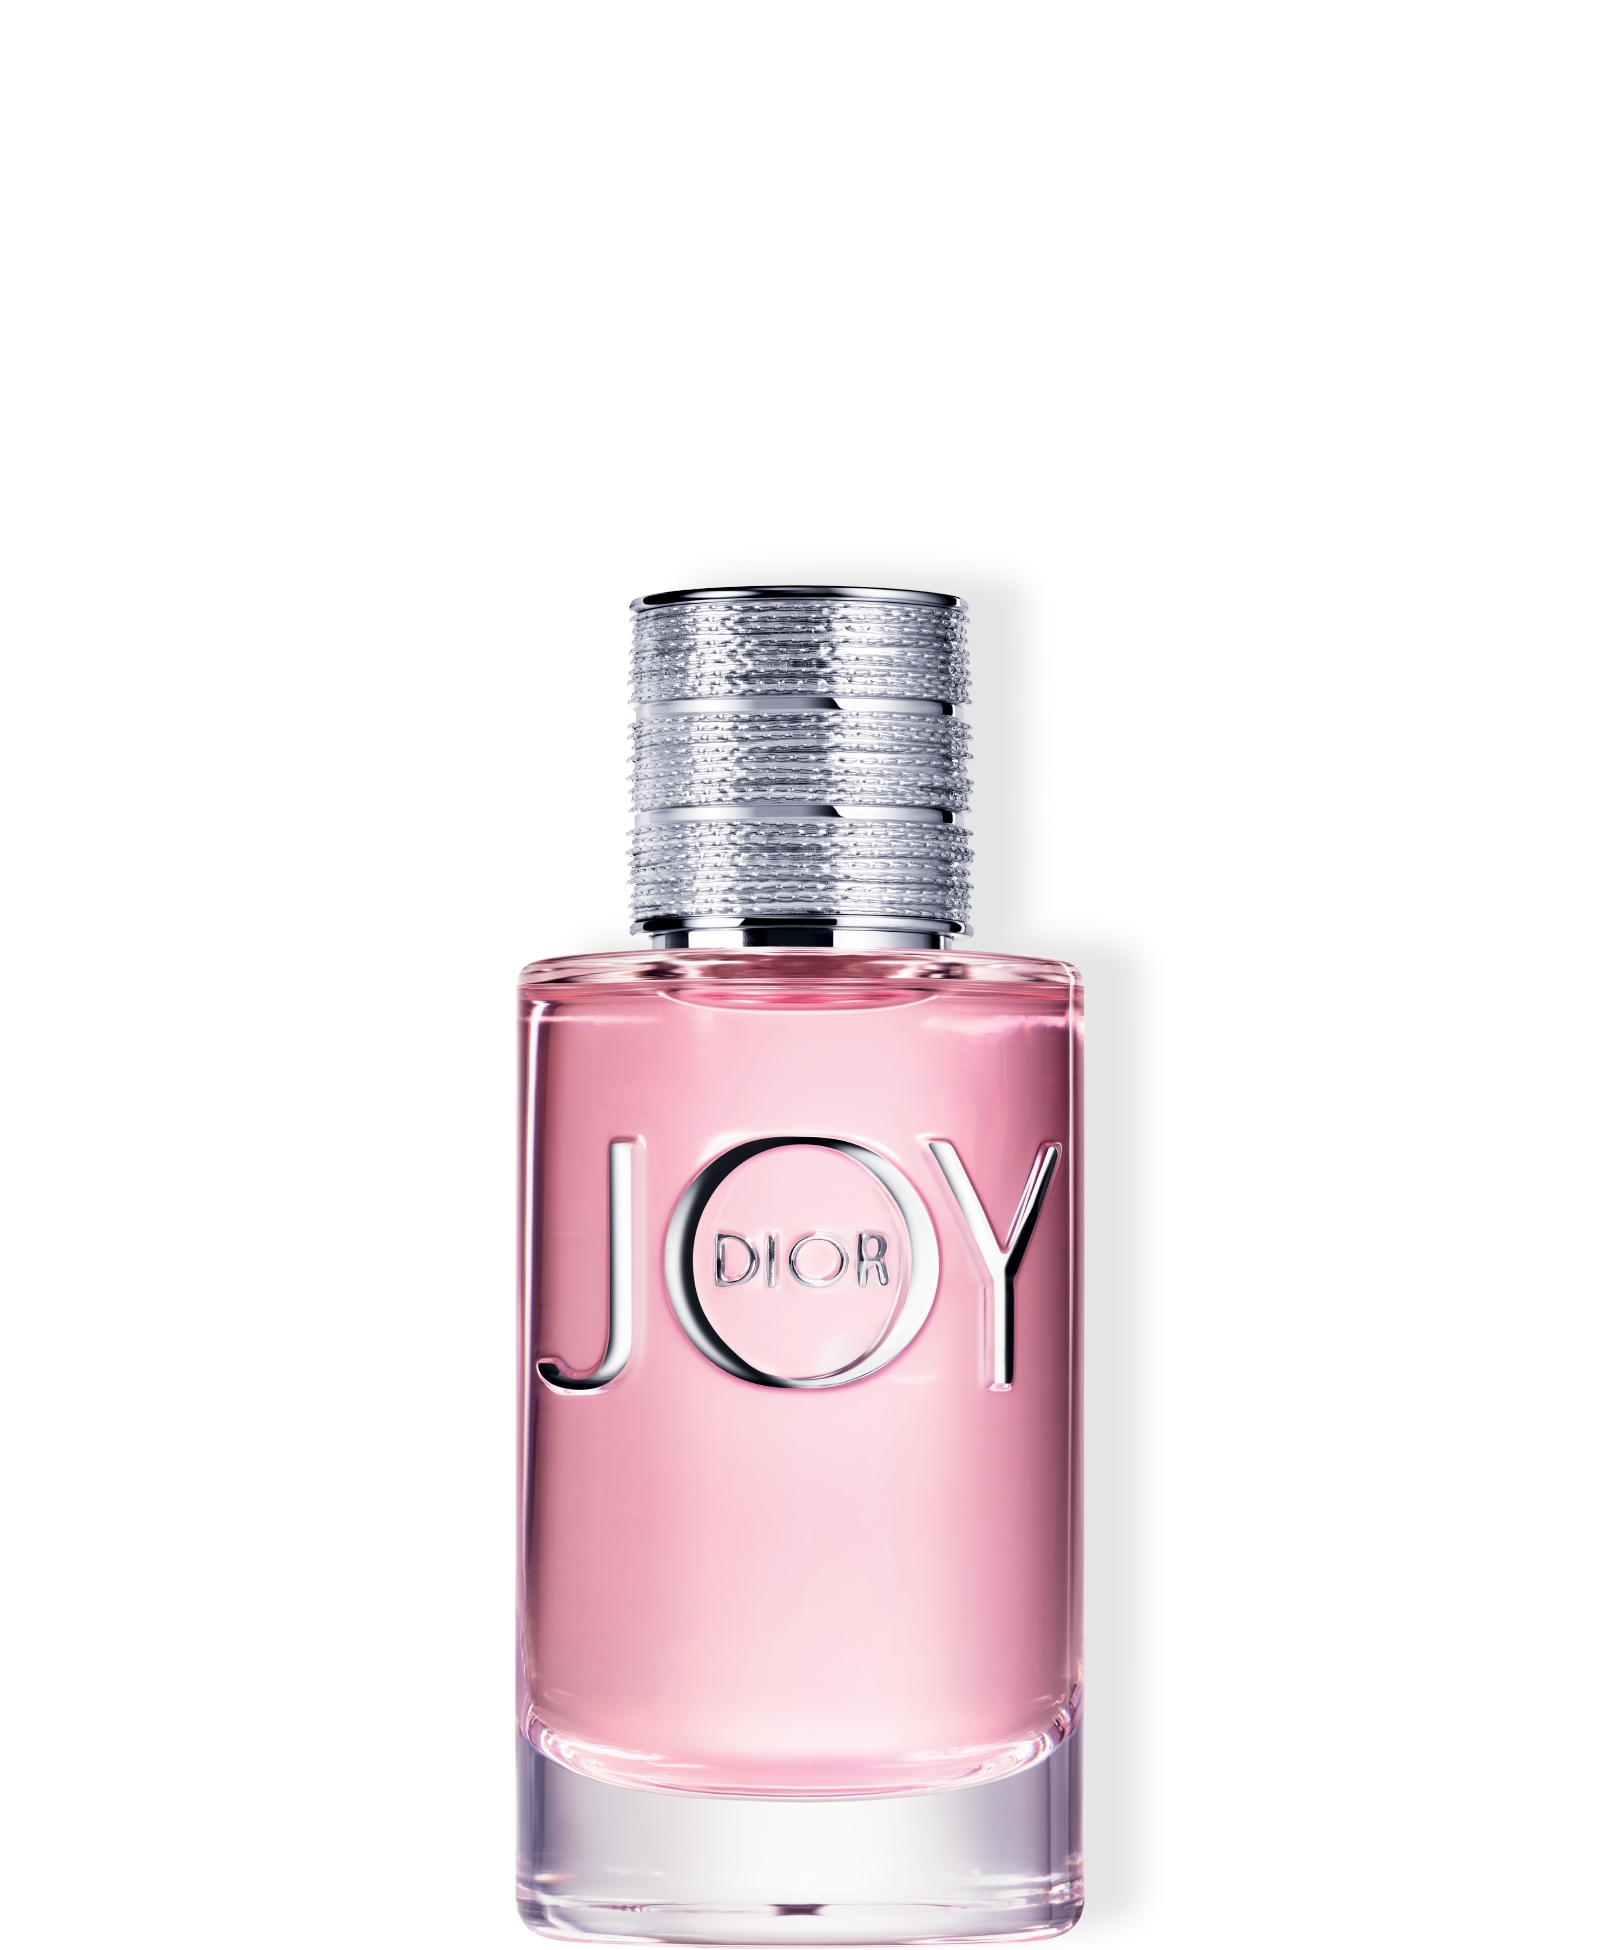  JOY by Dior Eau de Parfum